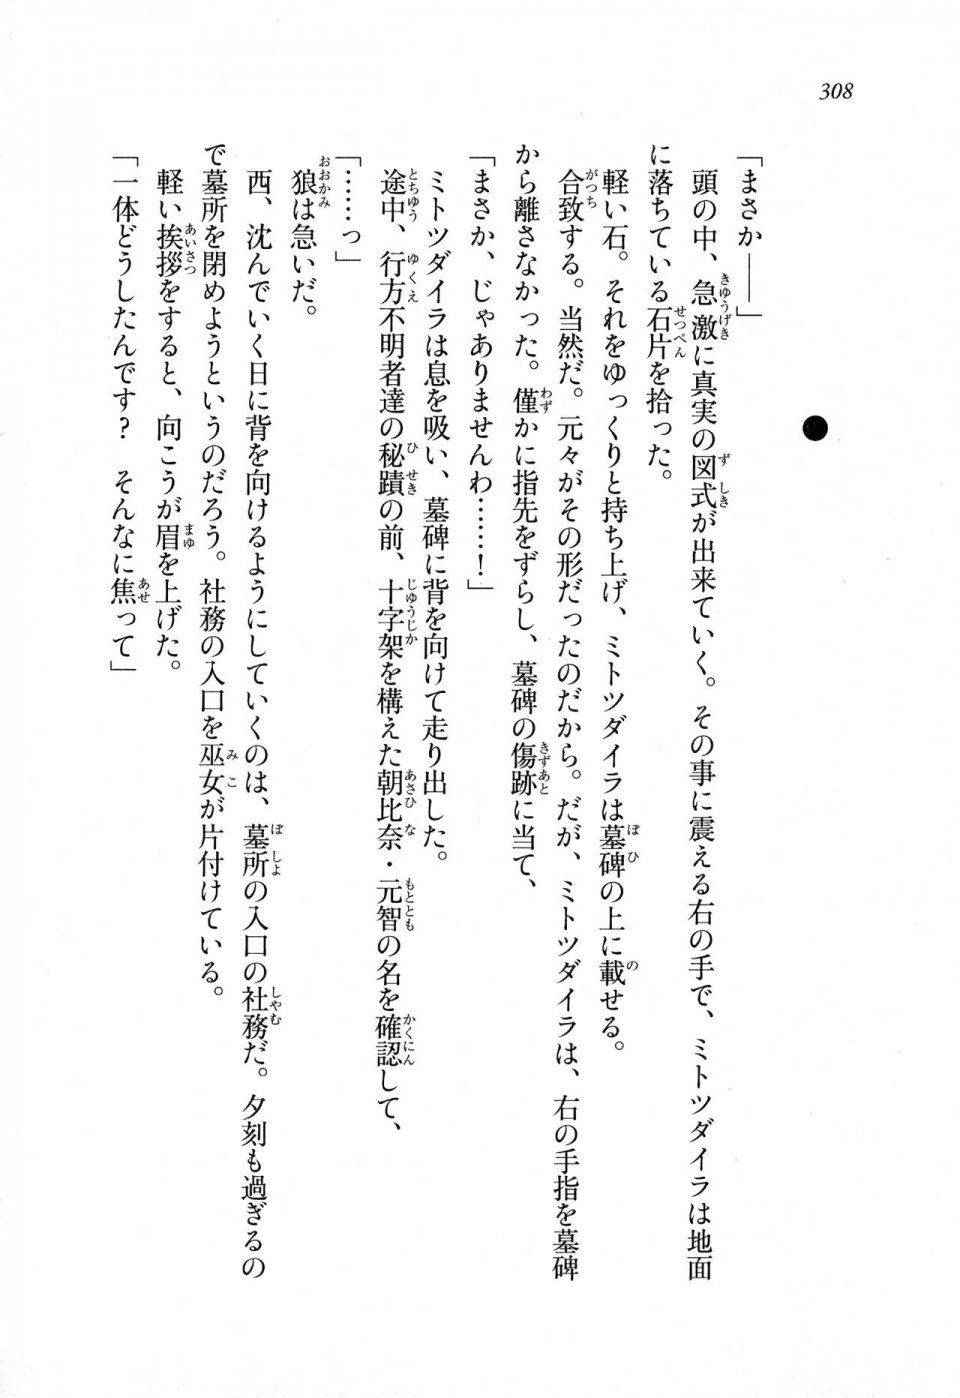 Kyoukai Senjou no Horizon LN Sidestory Vol 1 - Photo #306